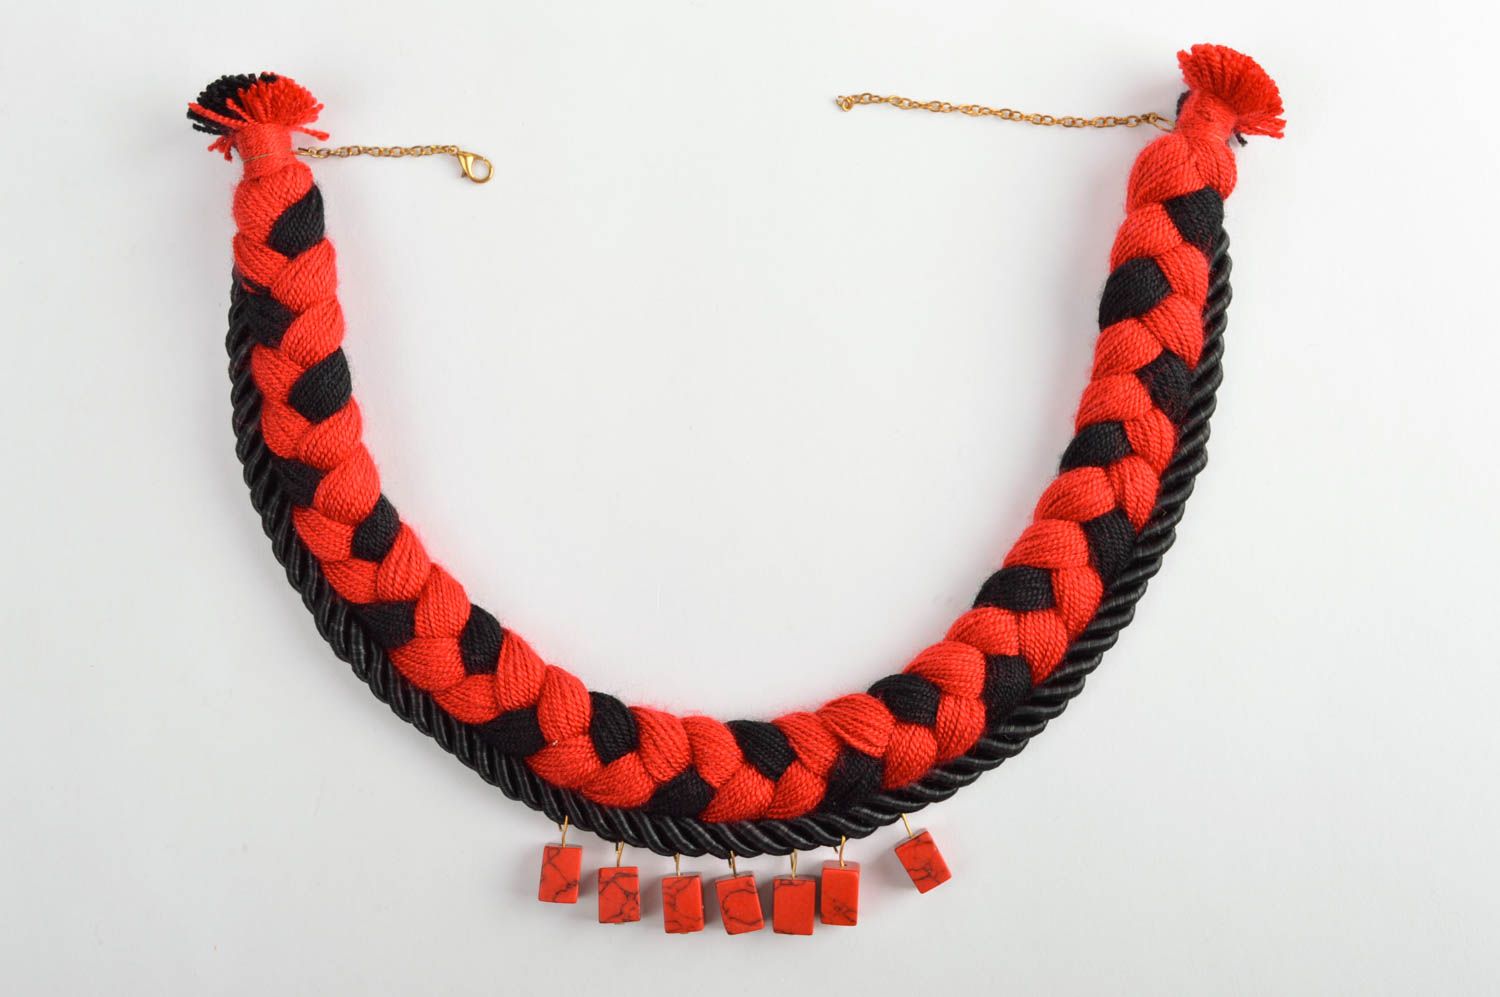 Collier textile Bijou fait main rouge et noir Accessoire femme tendance photo 5